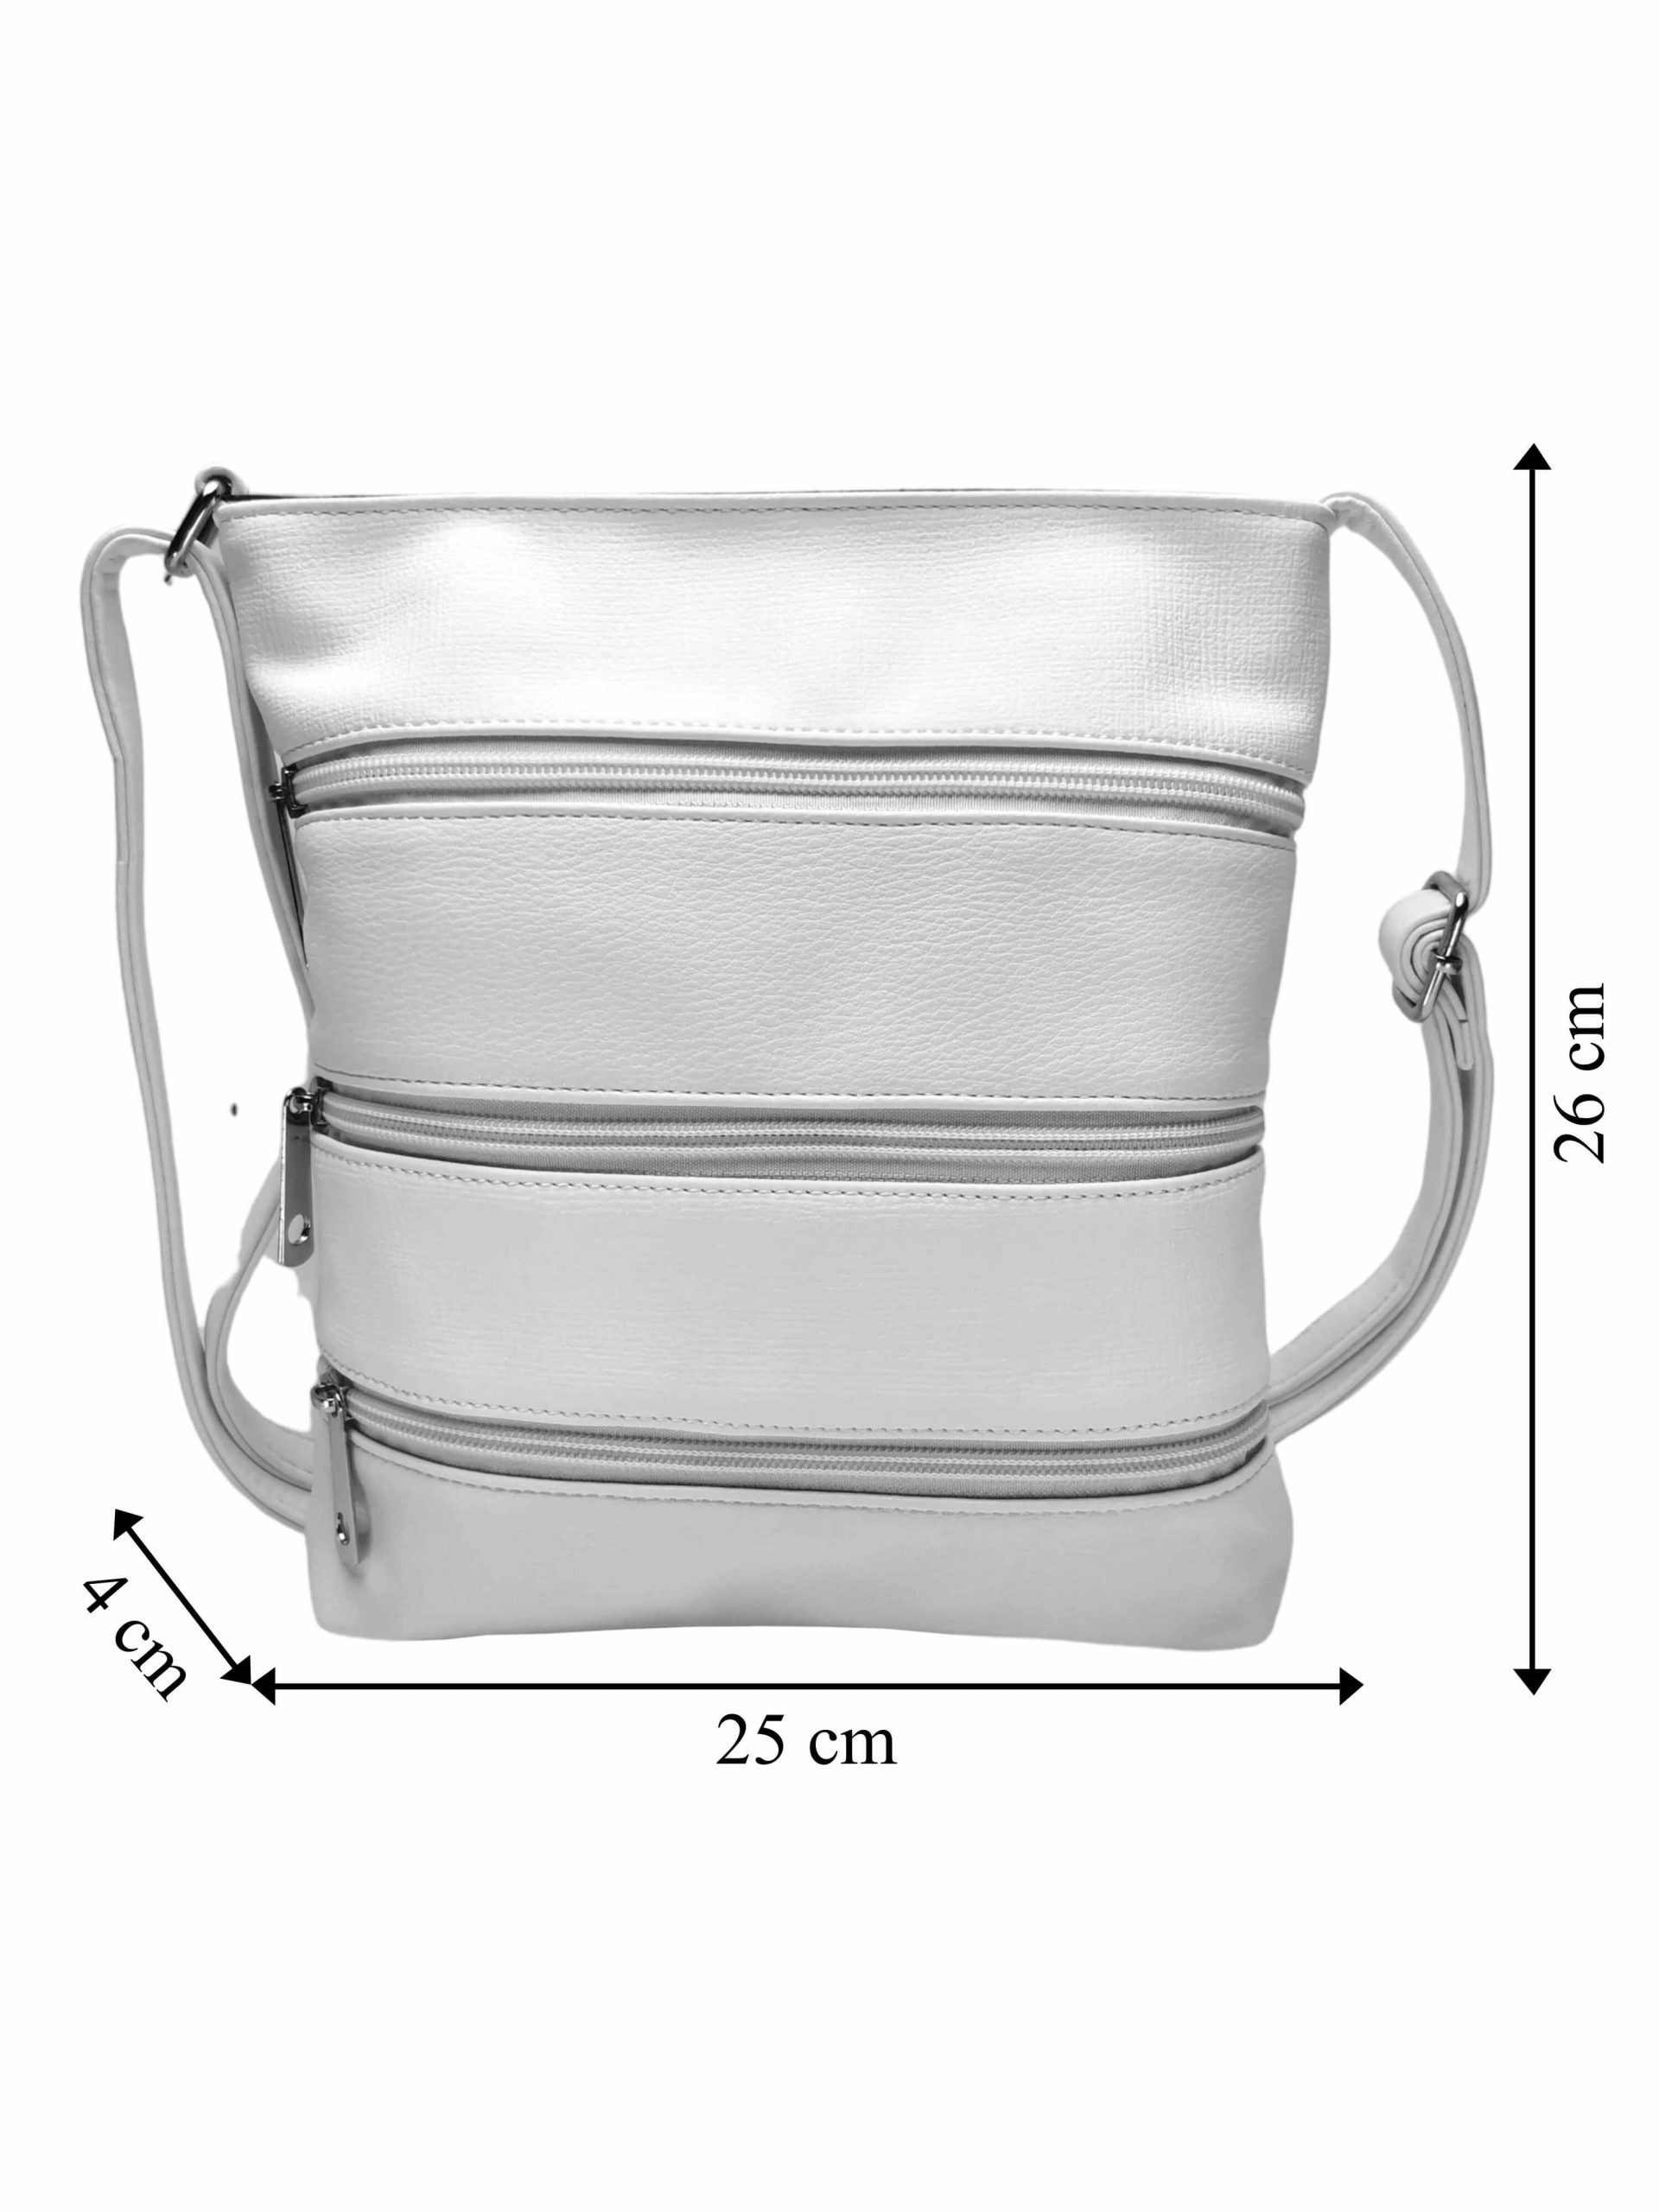 Bílá crossbody kabelka se stylovými zipy, Tapple H17286N, přední strana crossbody kabelky s rozměry